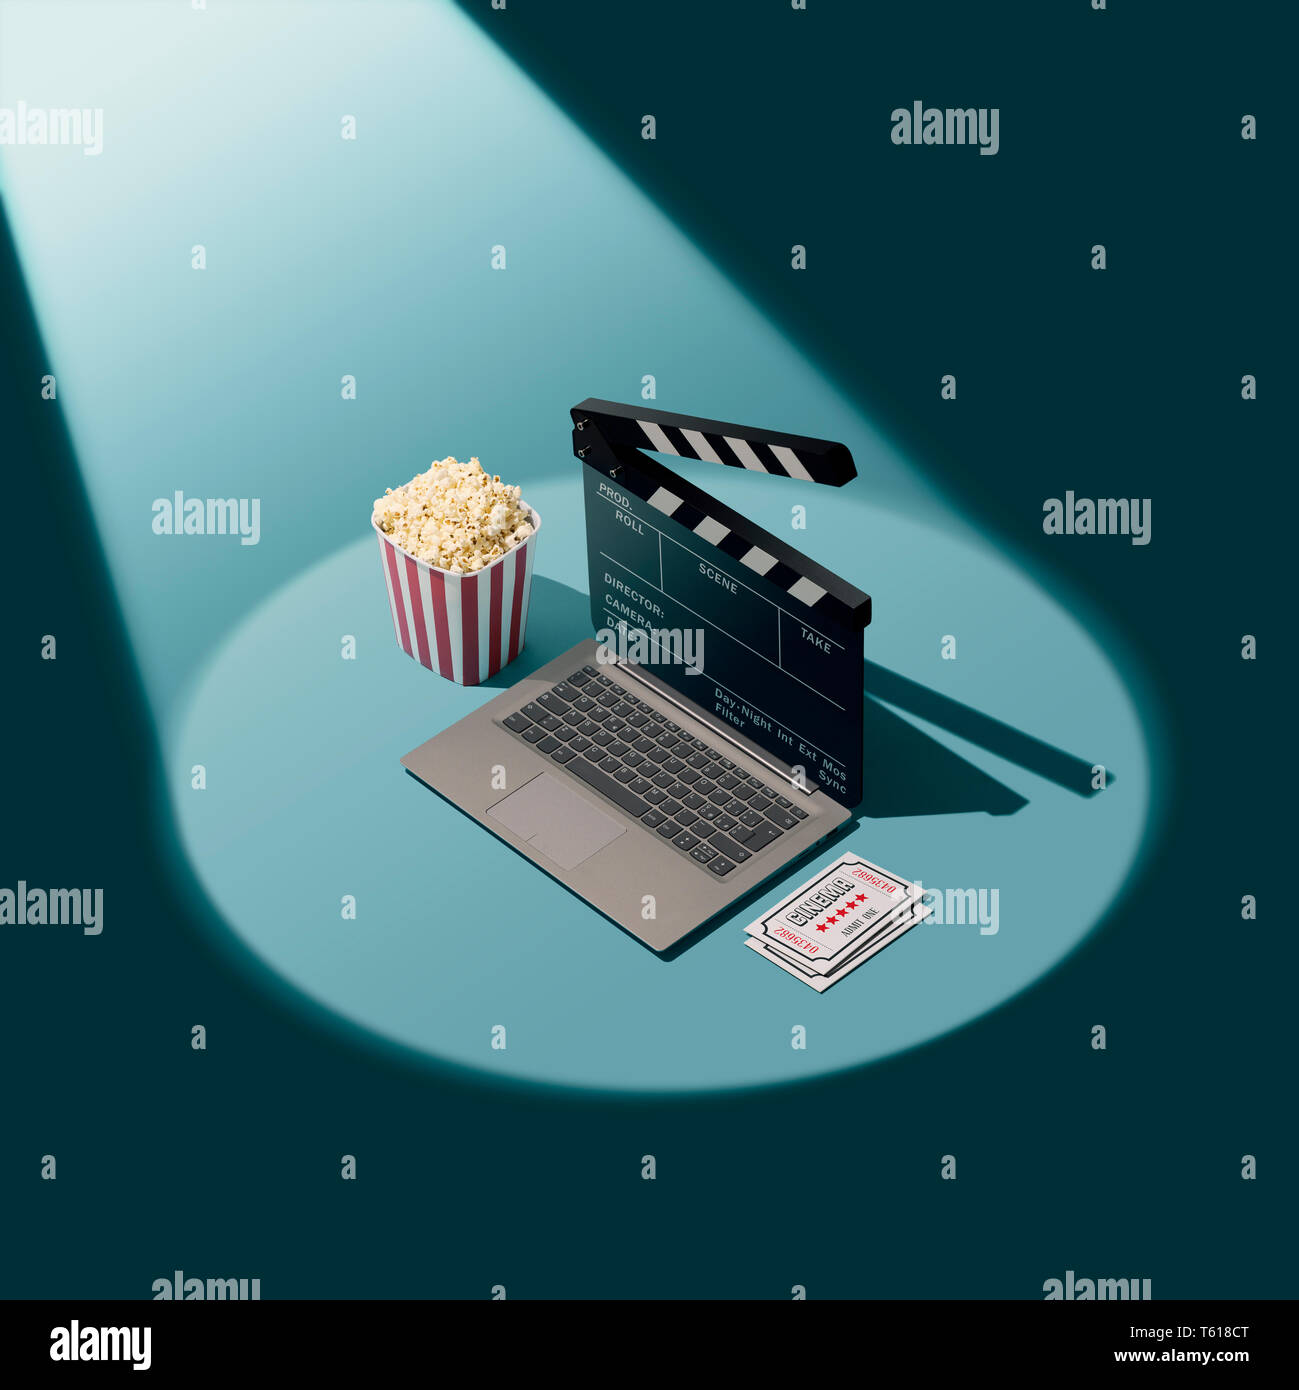 Online Film Streaming und Kino: Laptop mit Klappe als Bildschirm, Popcorn und Tickets im Rampenlicht Stockfoto